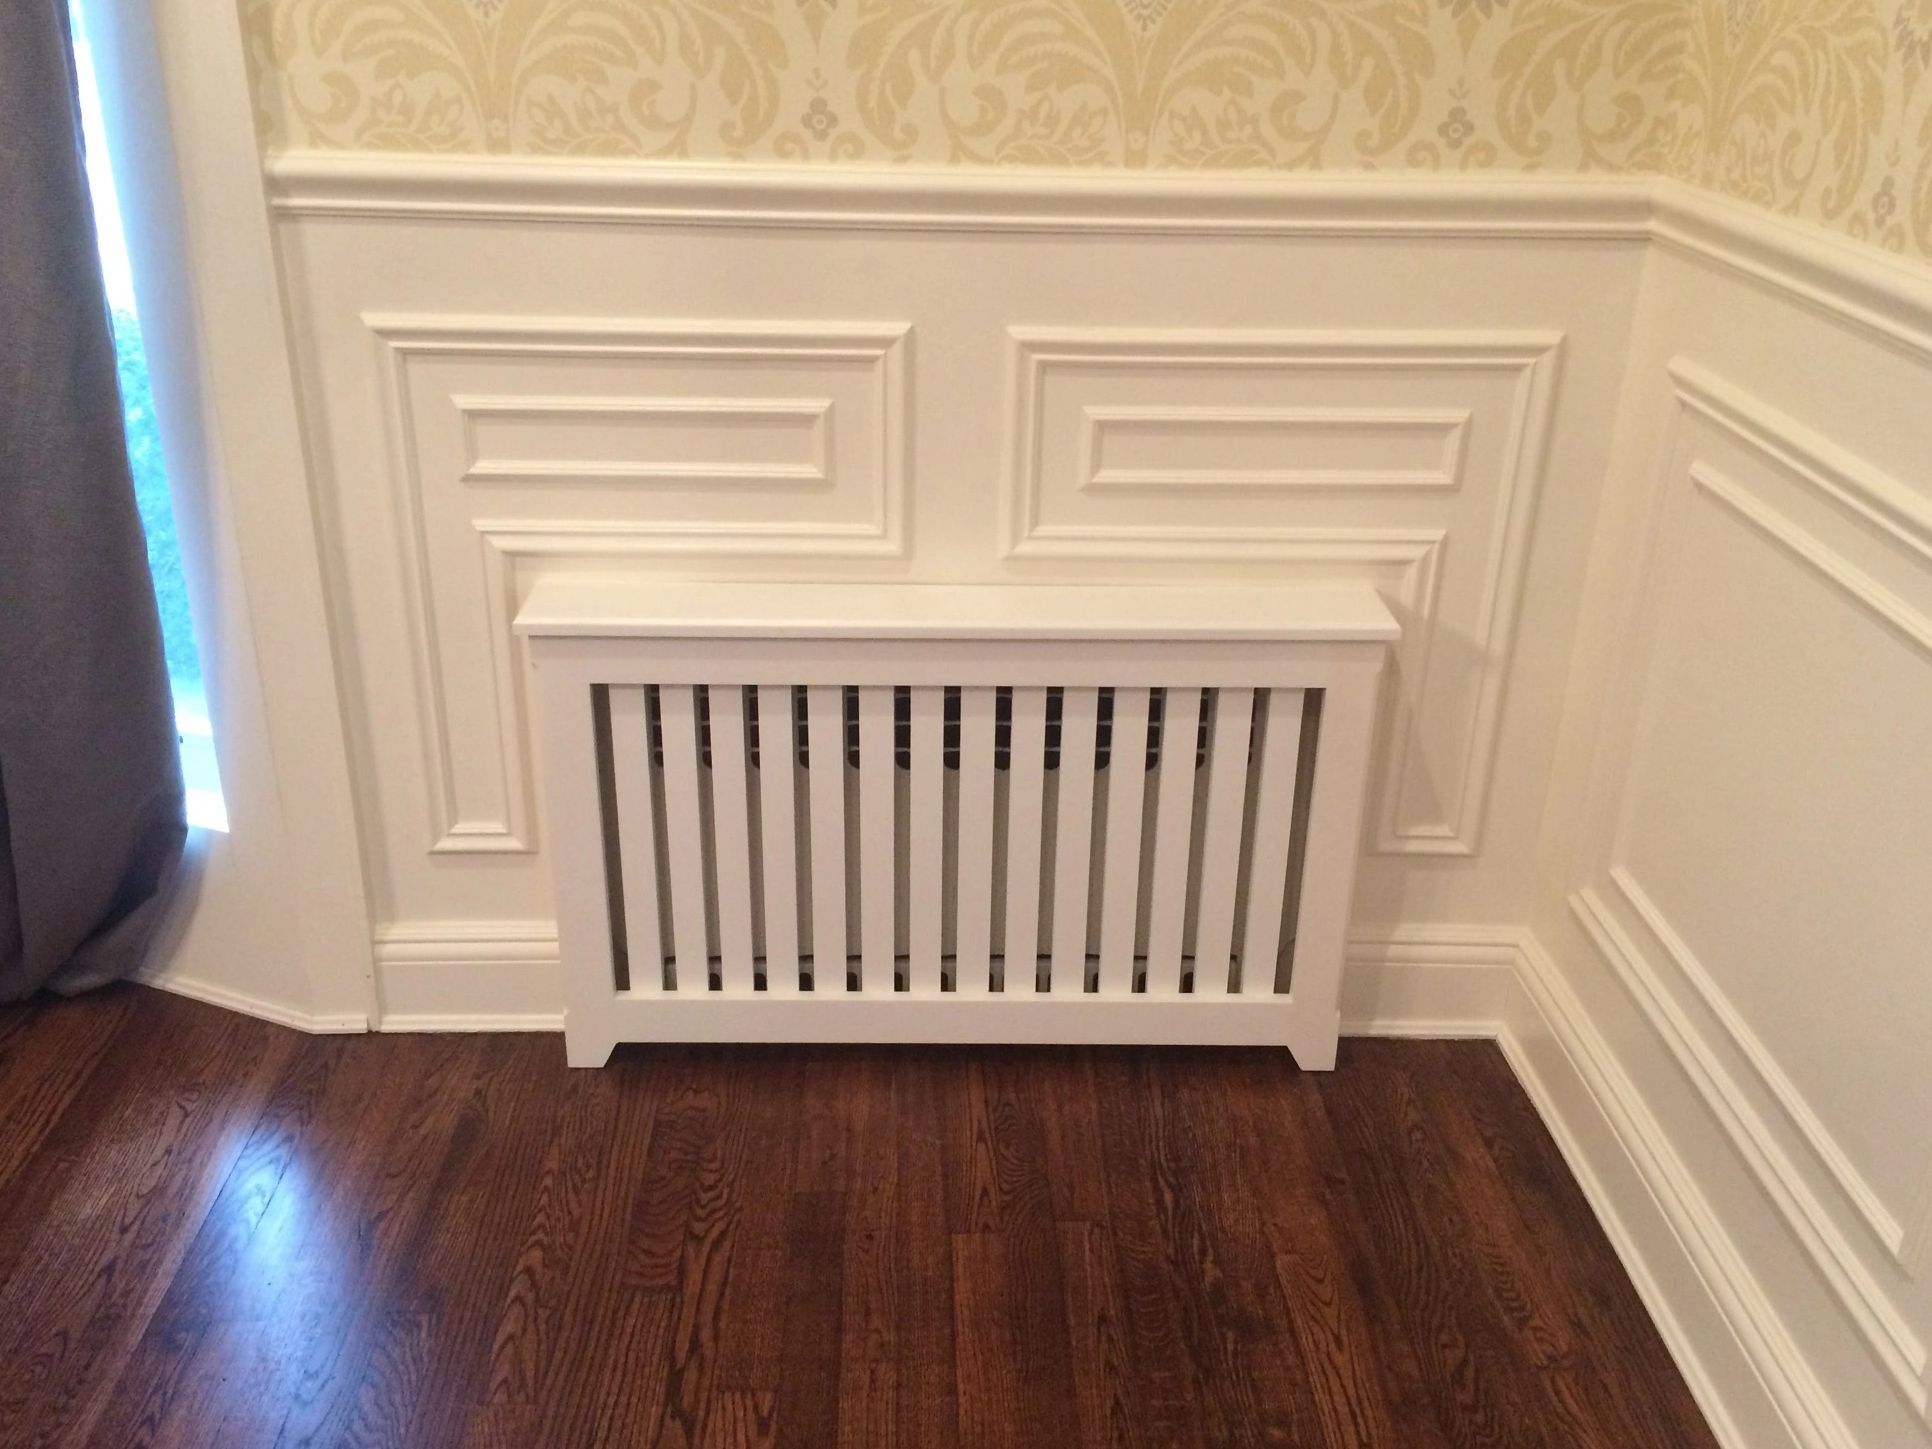 Custom radiator cover in Dining Room